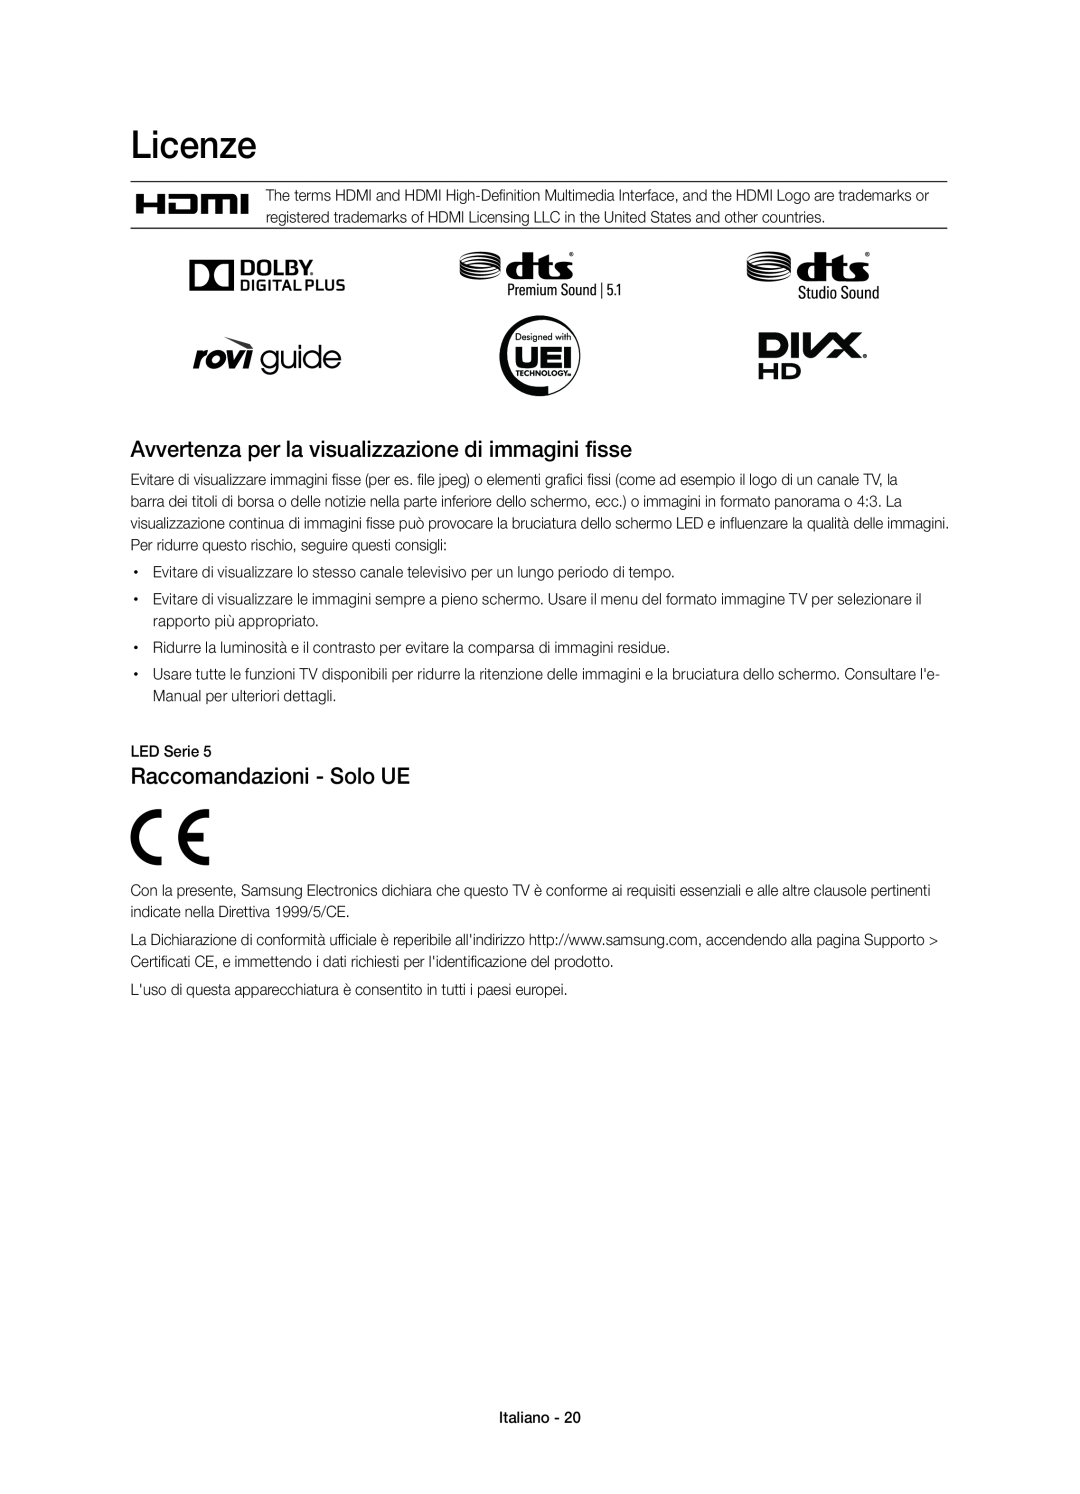 Samsung UE50H5373SSXZG manual Licenze, Avvertenza per la visualizzazione di immagini fisse, Raccomandazioni - Solo UE 